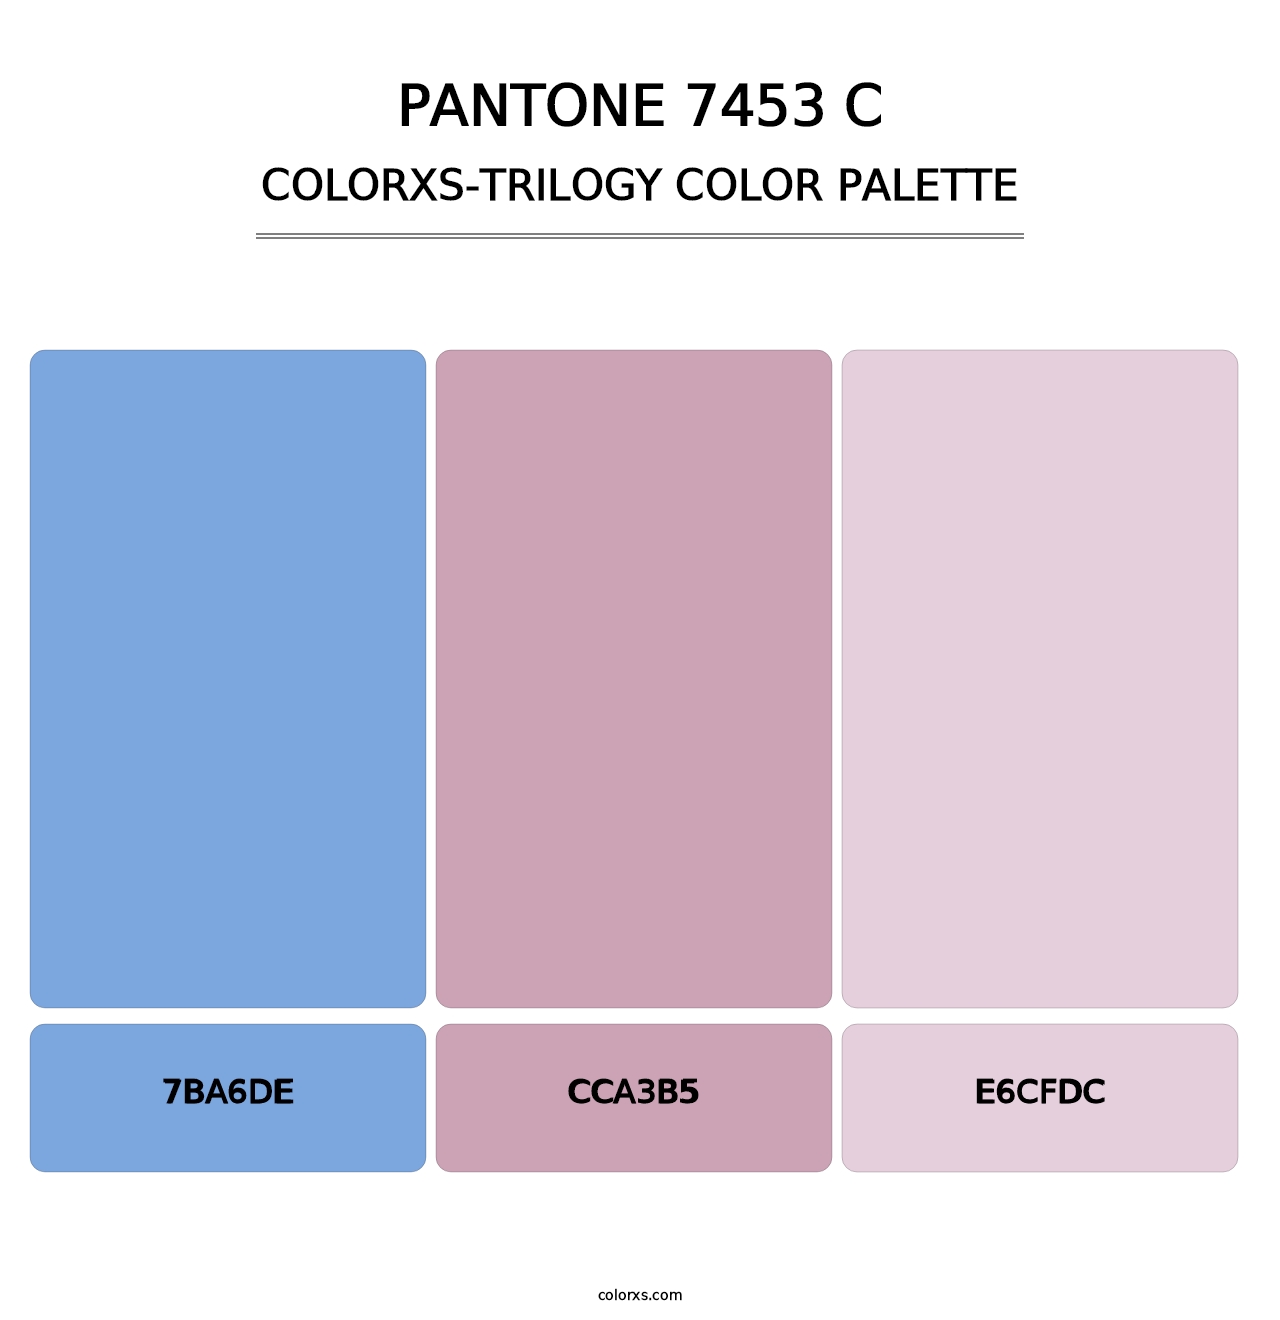 PANTONE 7453 C - Colorxs Trilogy Palette